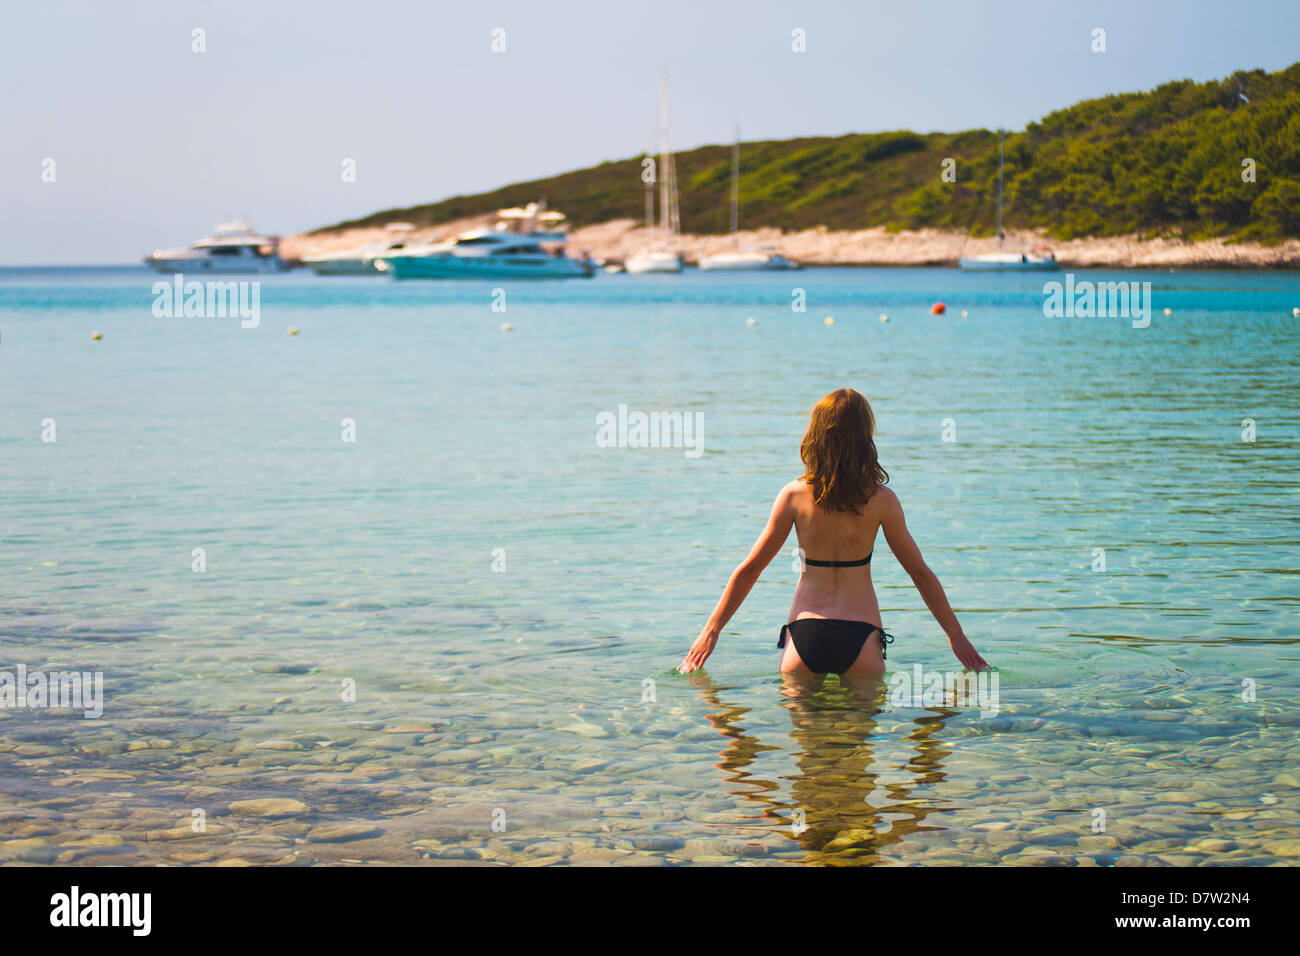 Piscina turistica su una spiaggia in isole di Pakleni (Isole Paklinski), vicino all'Isola di Hvar, costa dalmata, Mare Adriatico, Croazia Foto Stock